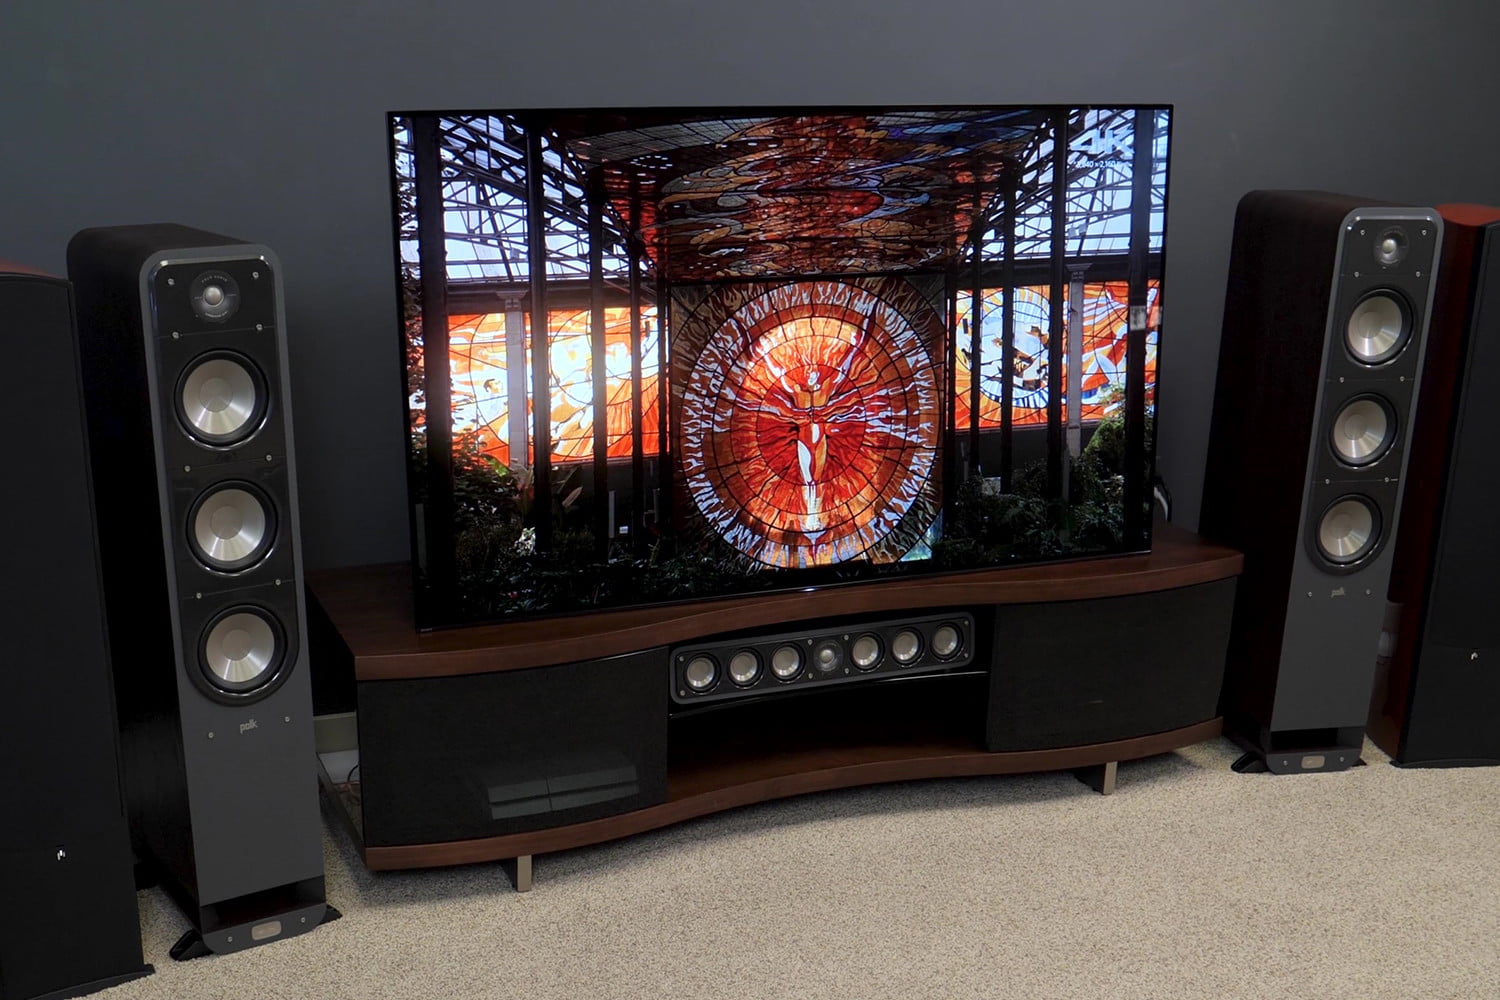 sony-a1e-oled-tv-review-xbr55a1e-xbr65a1e-xbr77a1e-screen-angle-speakers-2-1500x1000.jpg